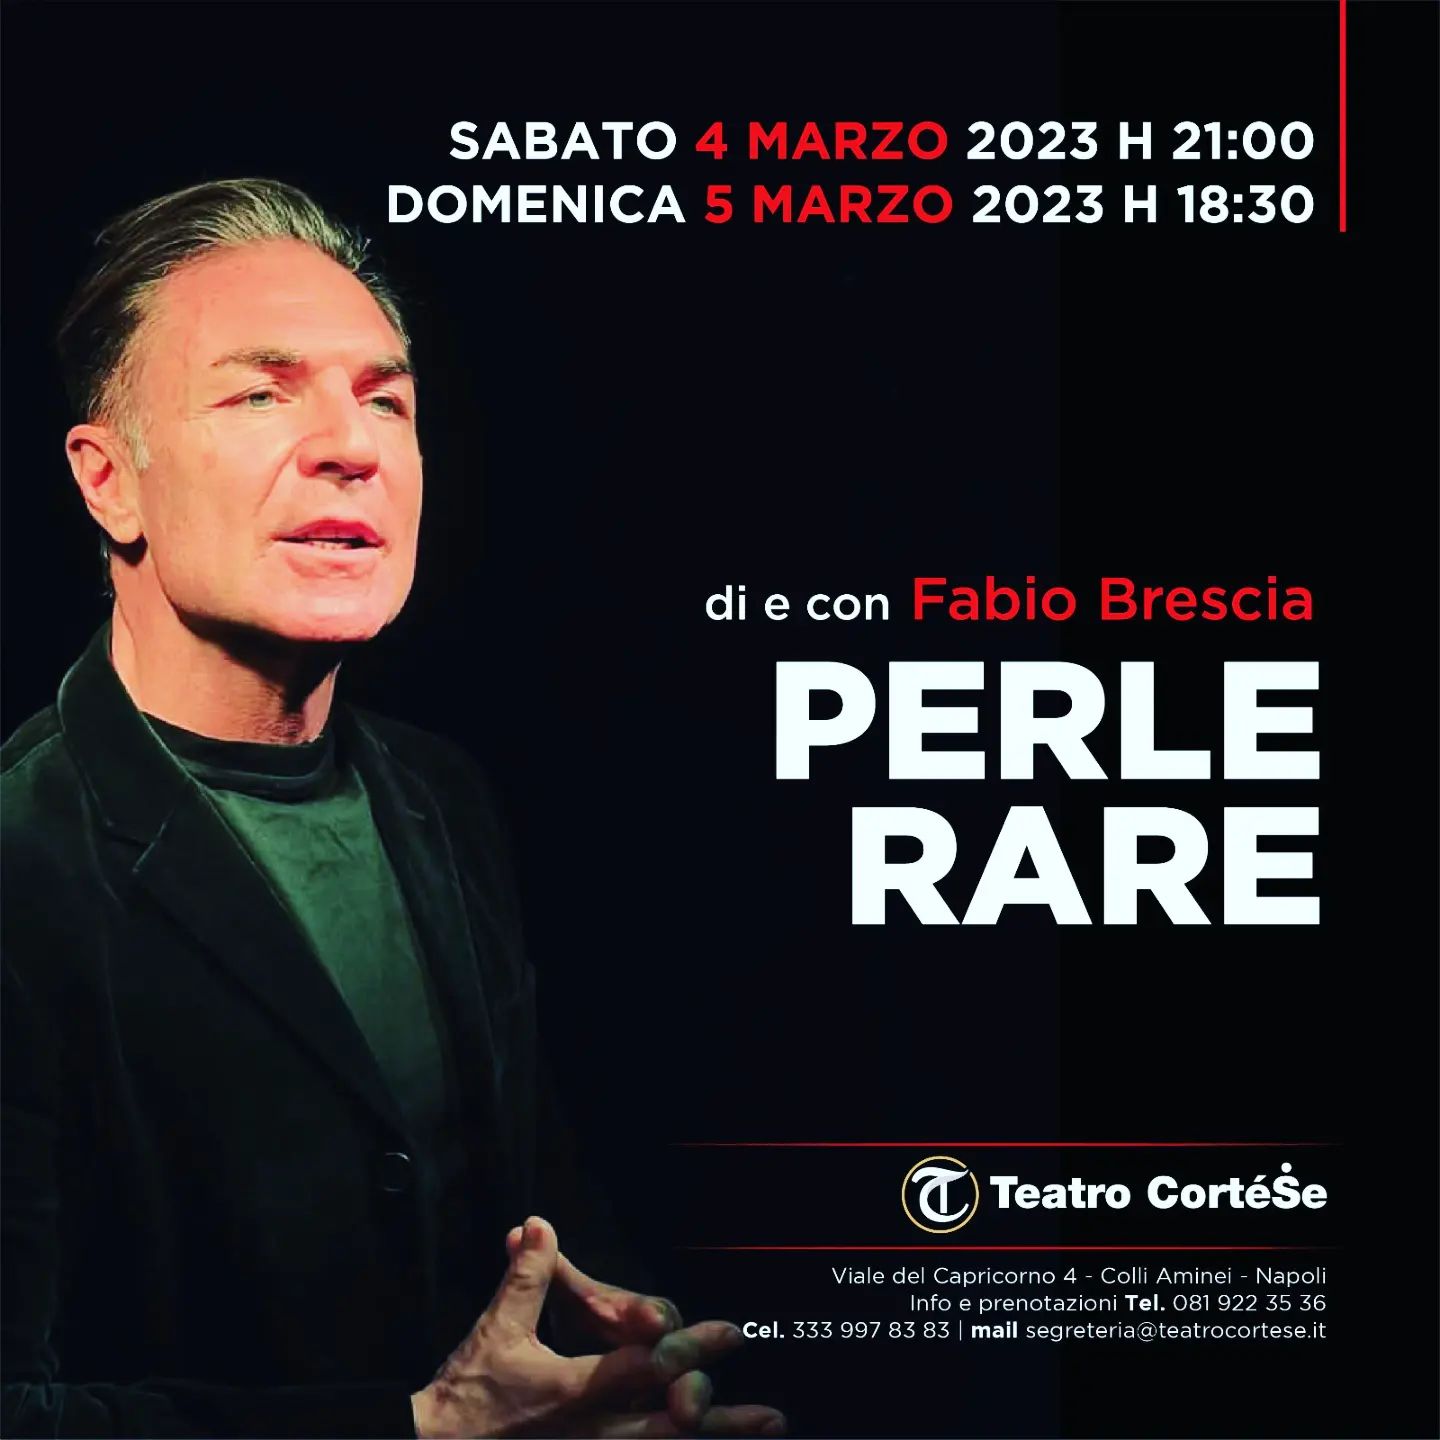 Al Teatro CorteSe dei Colli Aminei arriva lo spettacolo di Fabio Brescia: “Perle Rare”